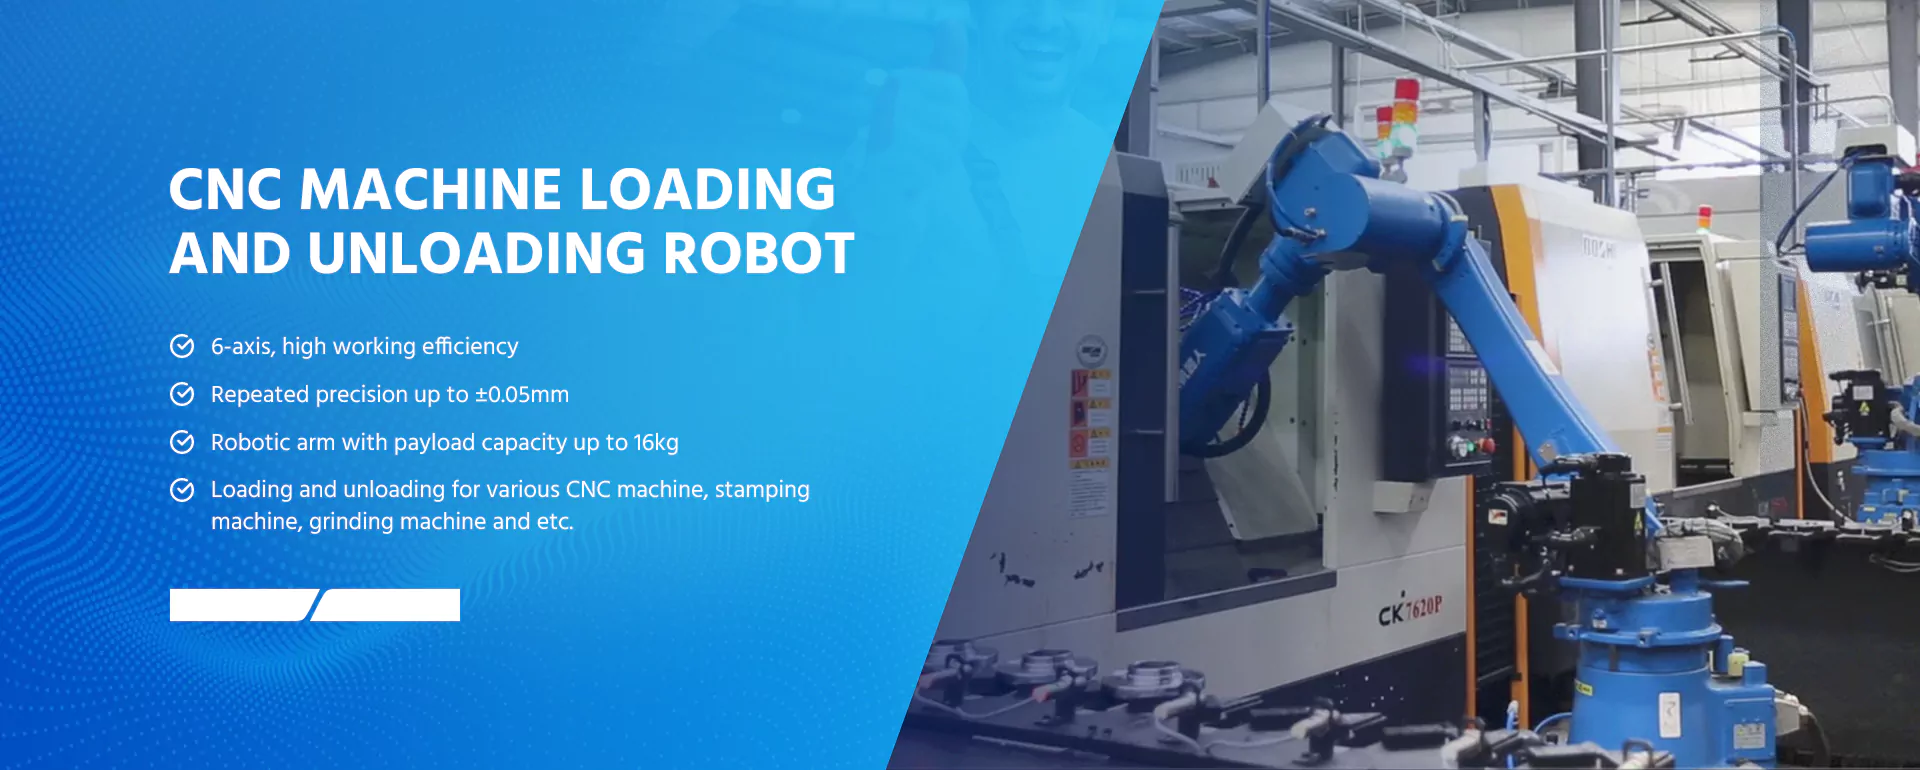 HuazhongCNC_CNC_Machine_Loading_and_Uploading_Robot